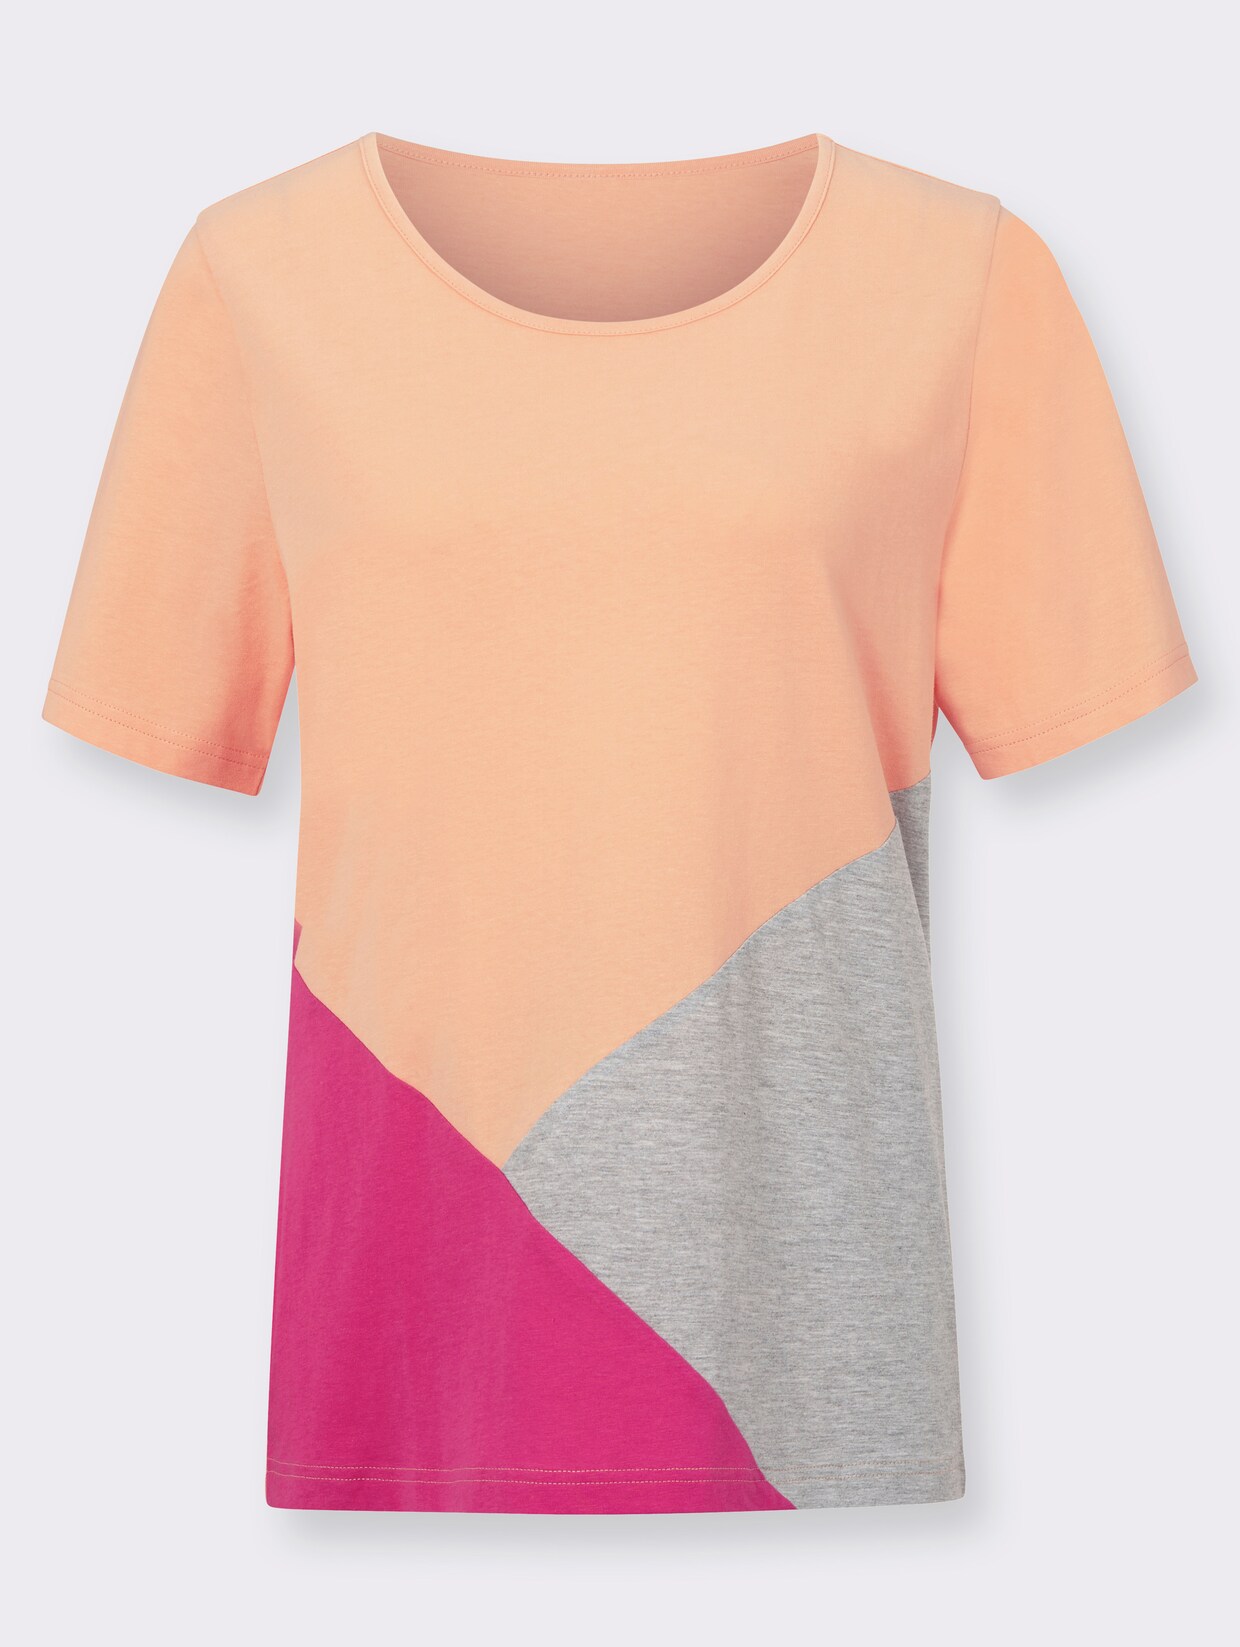 Tričko s krátkým rukávem - meruňková-vzor